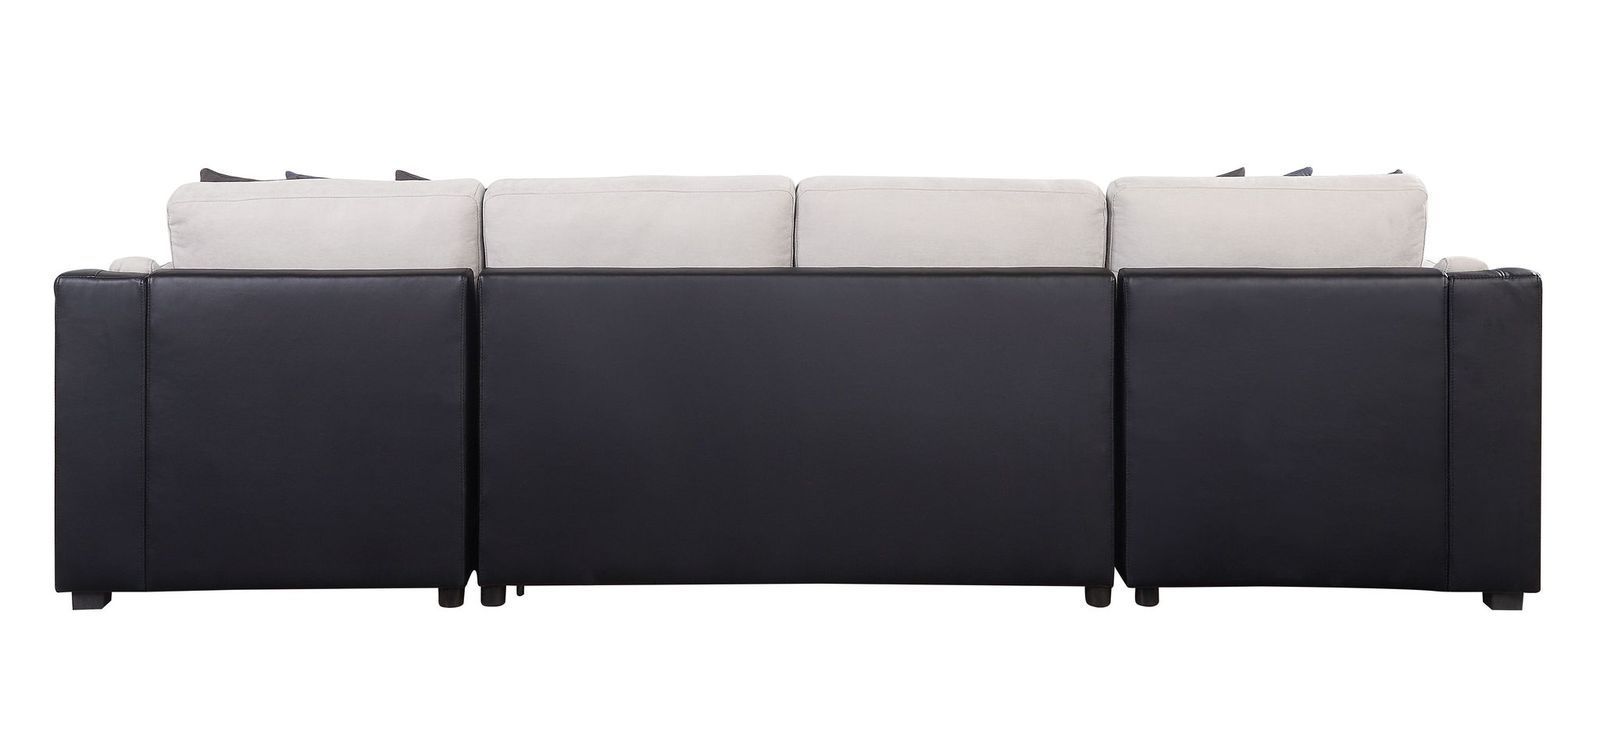 Sectional Sofa Sleeper- Beige Fabric and Black PU